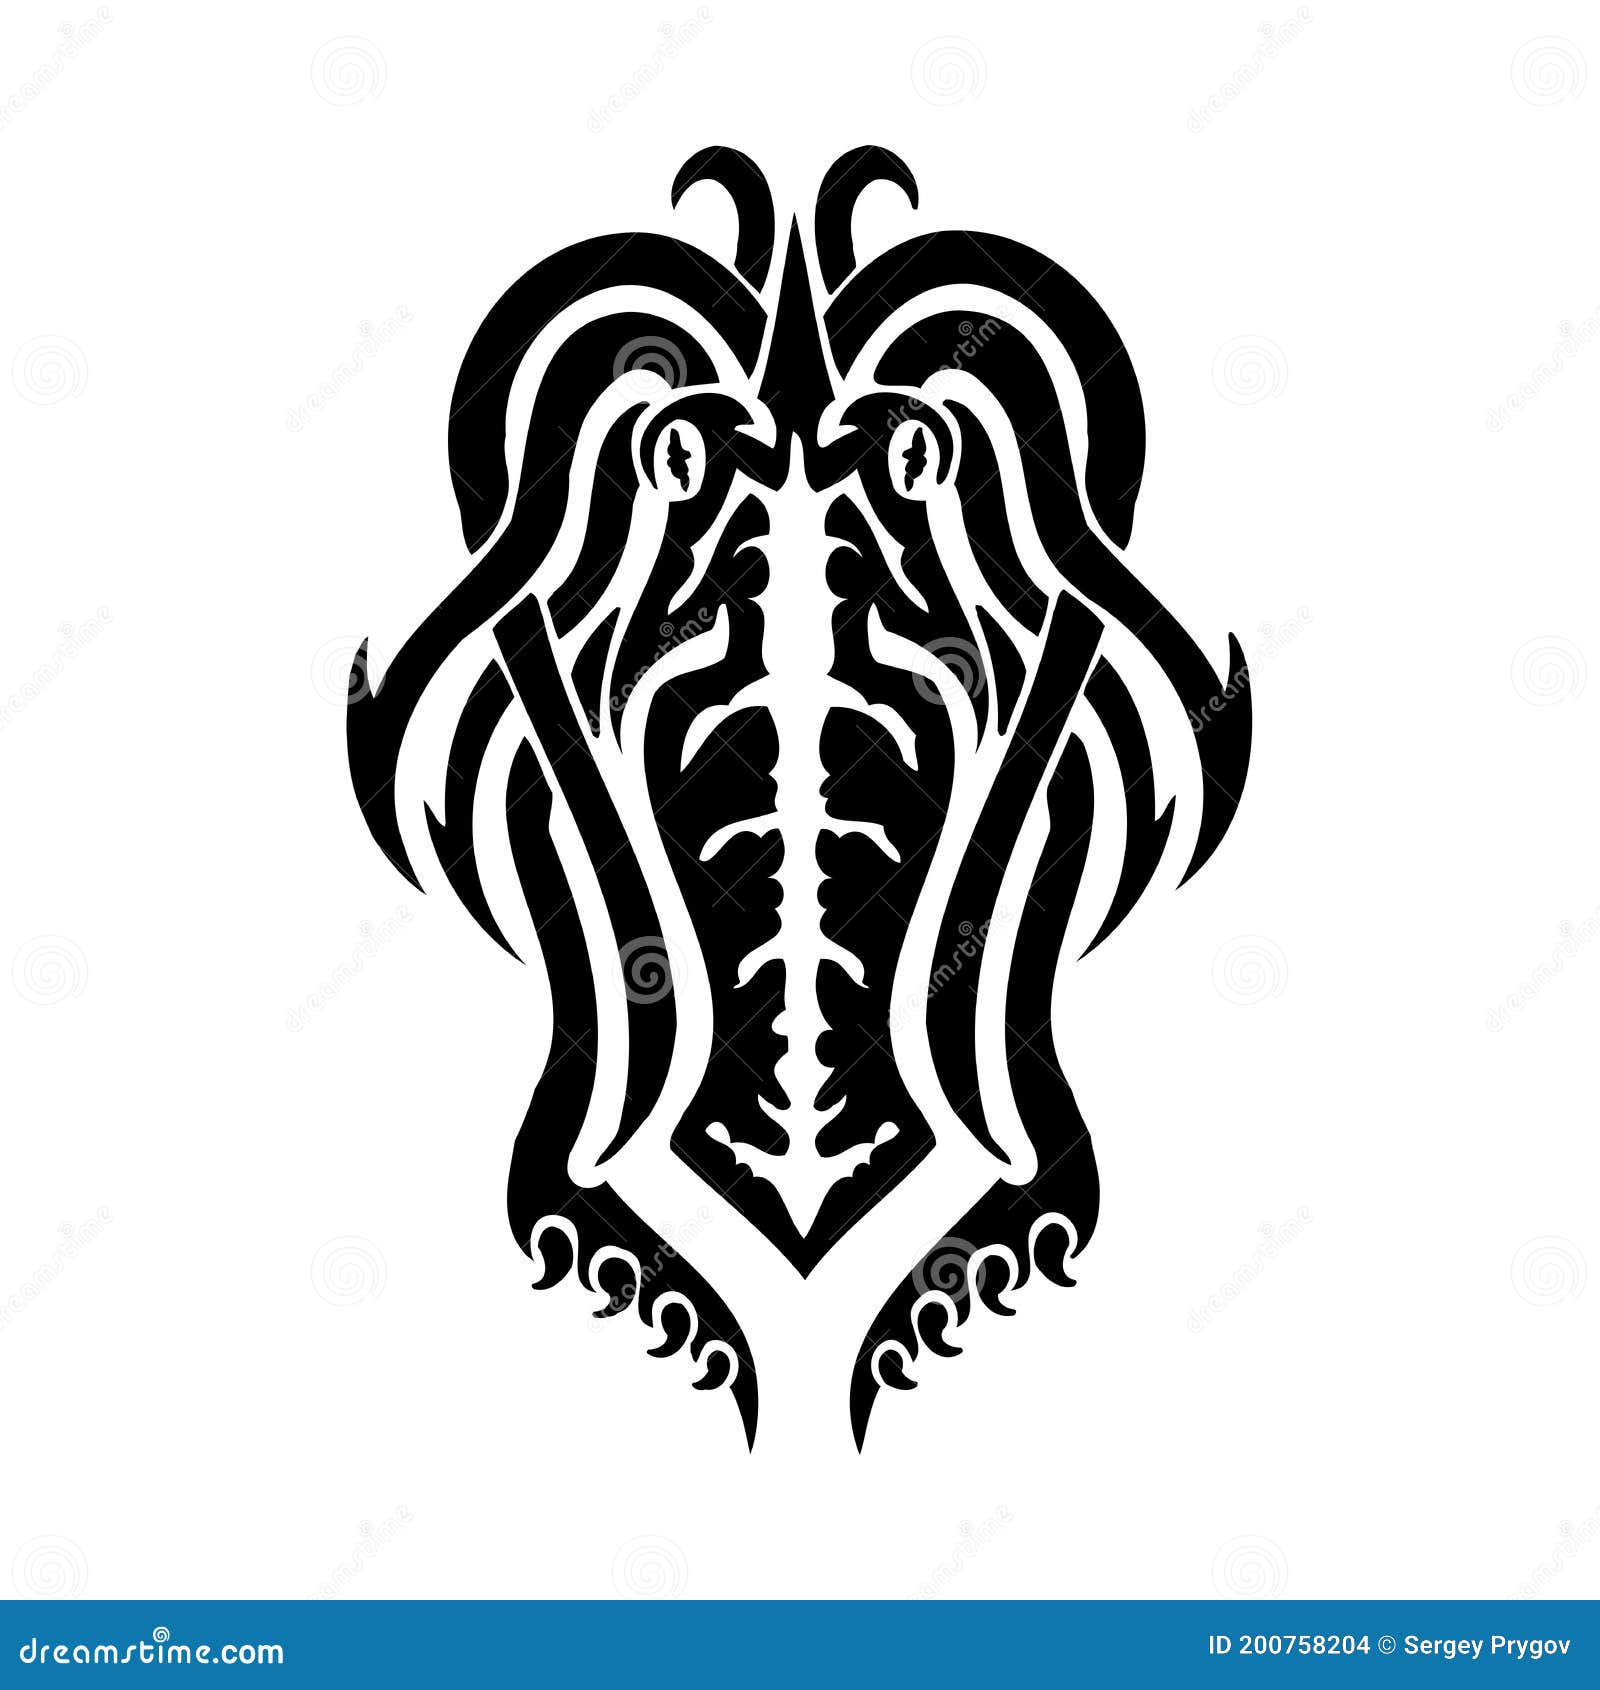 Monster Horn Tattoo Tribal Illustration Stock Vector (Royalty Free)  2219187955 | Shutterstock